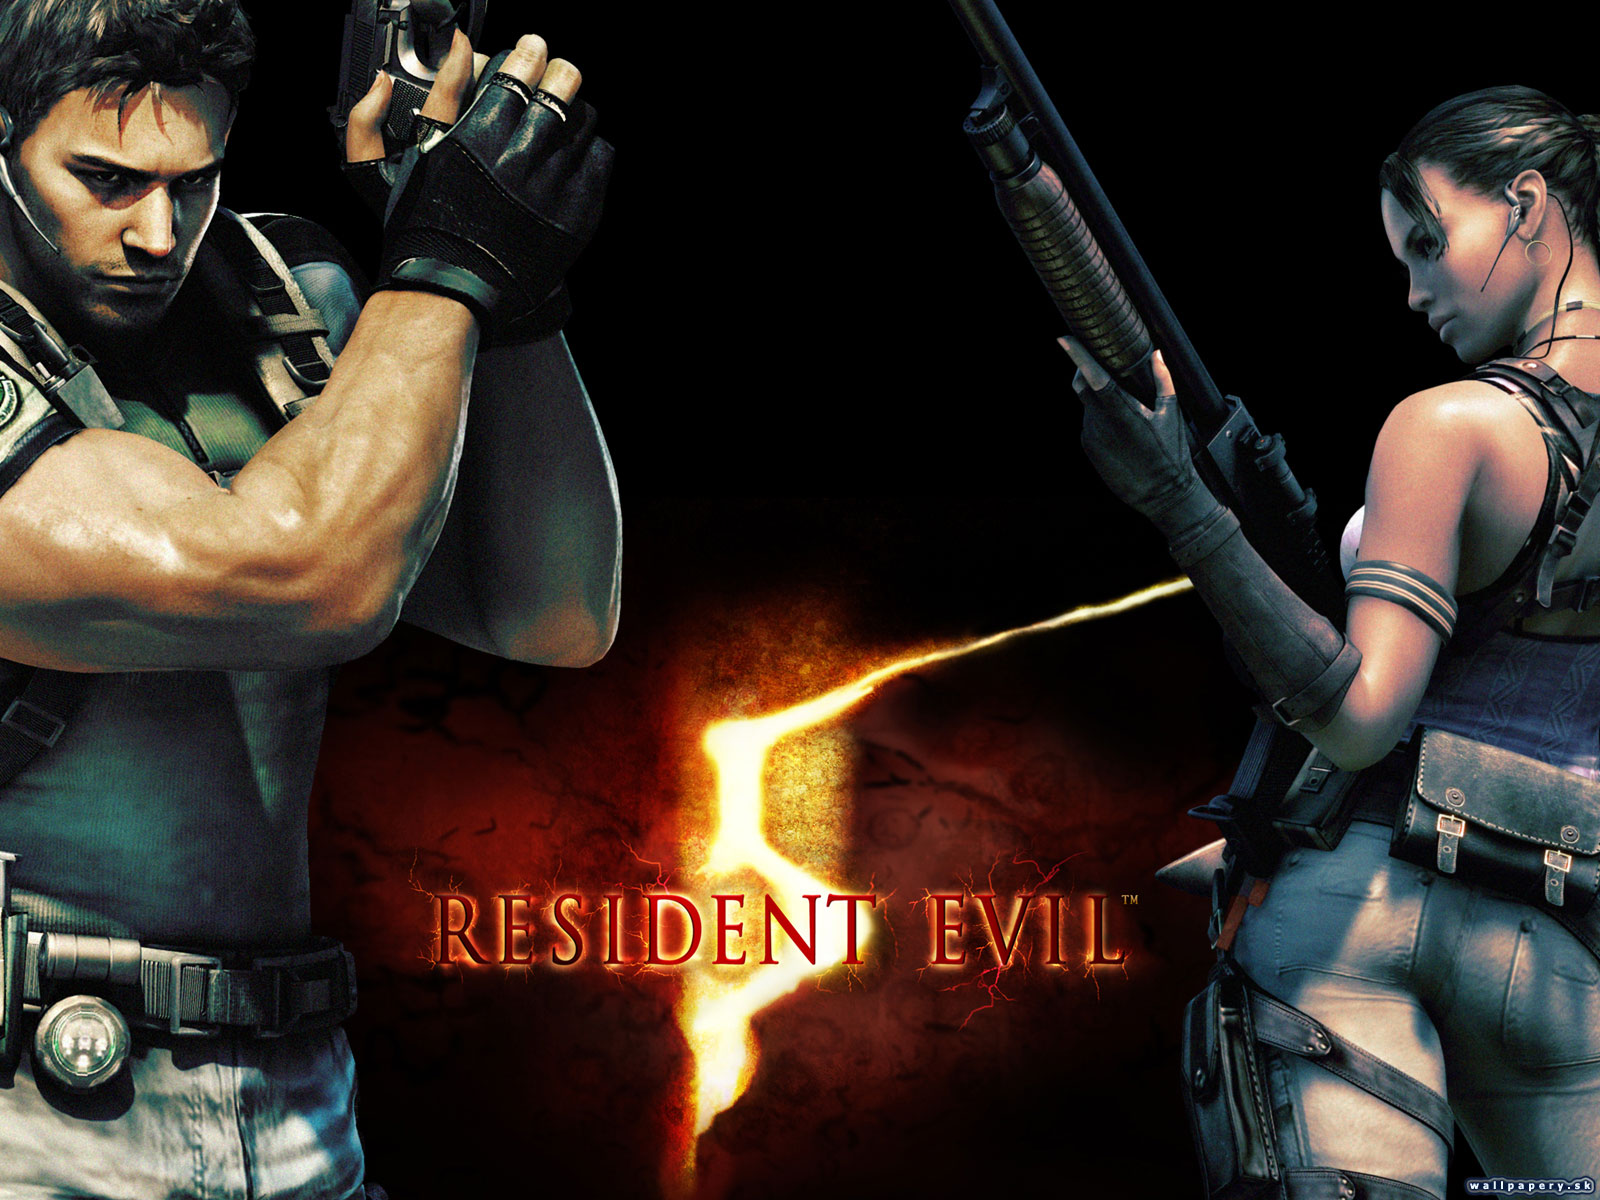 Resident evil 5 русификатор